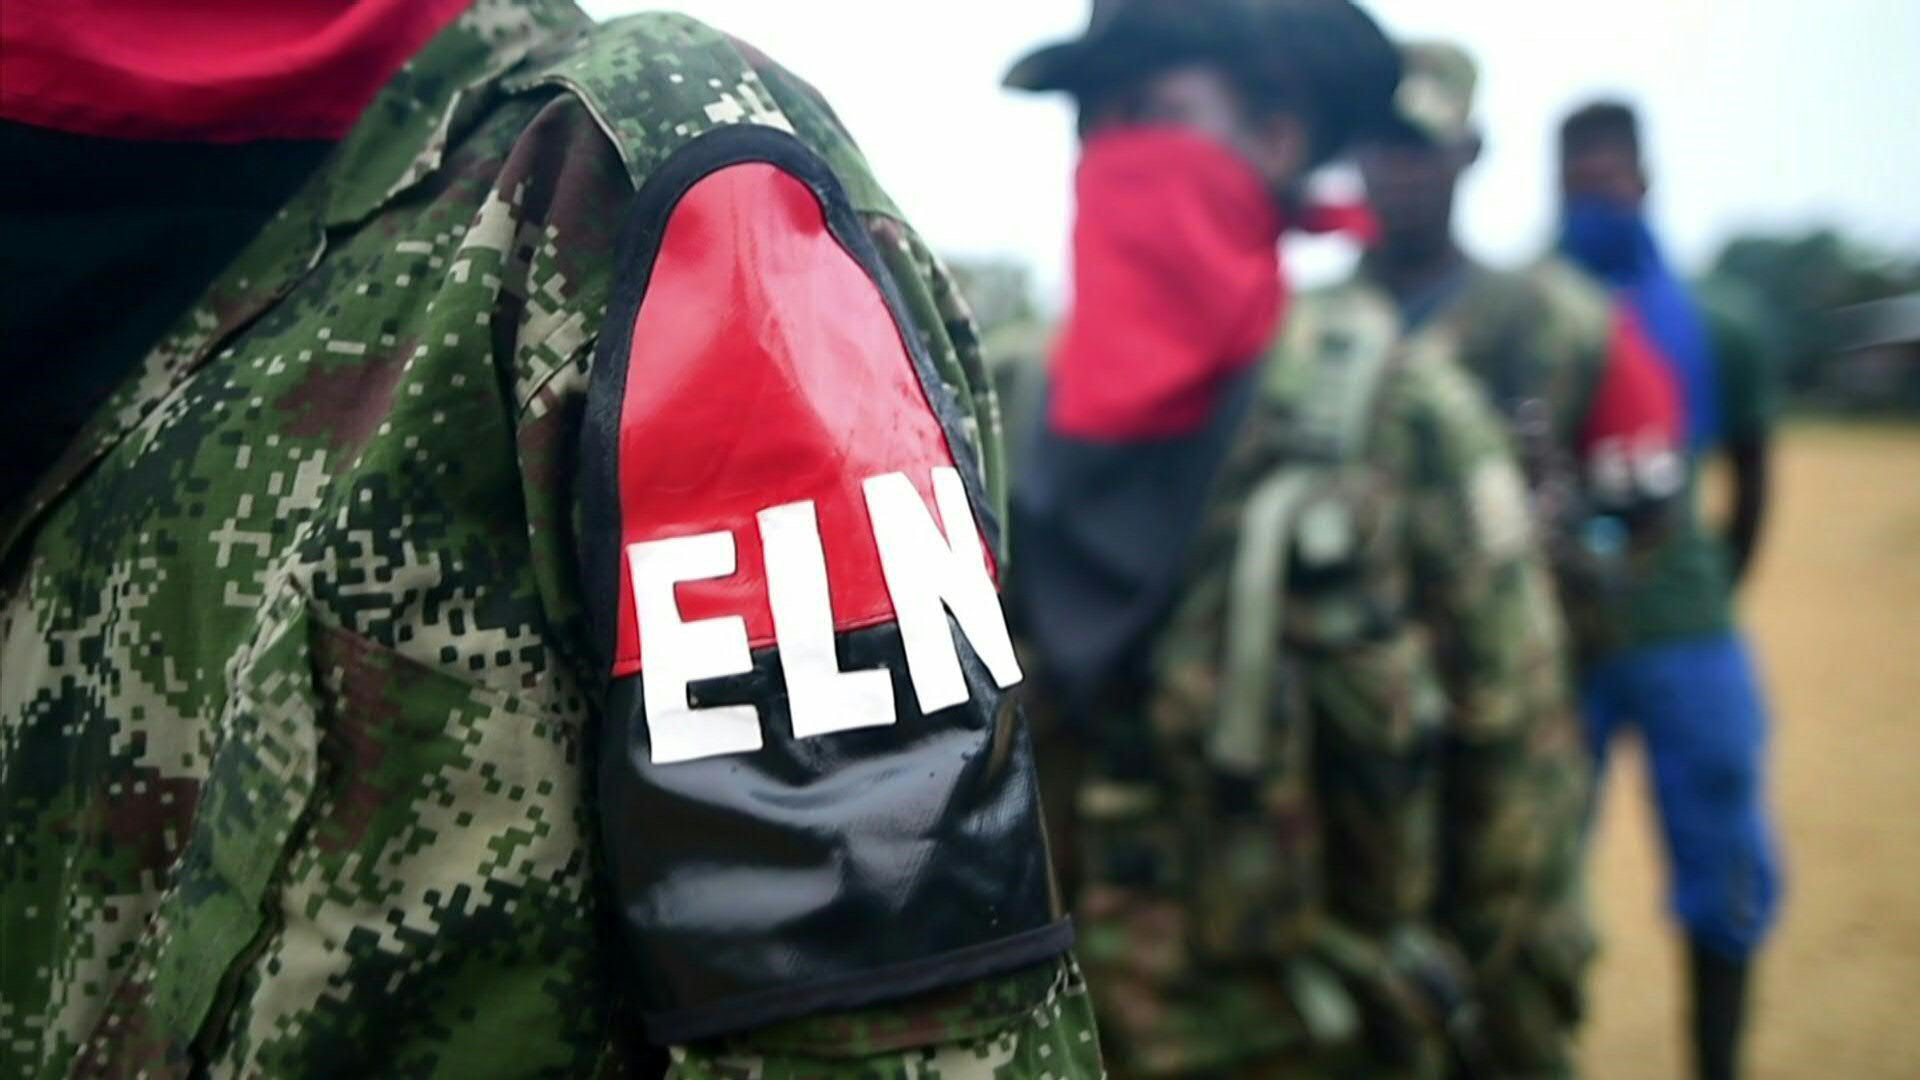 El ELN, el último grupo guerrillero reconocido en Colombia, anunció el lunes un alto al fuego de diez días con miras a las elecciones presidenciales del 29 de mayo, cuya intención de voto domina un opositor y antiguo rebelde favorable al diálogo con los alzados en armas.